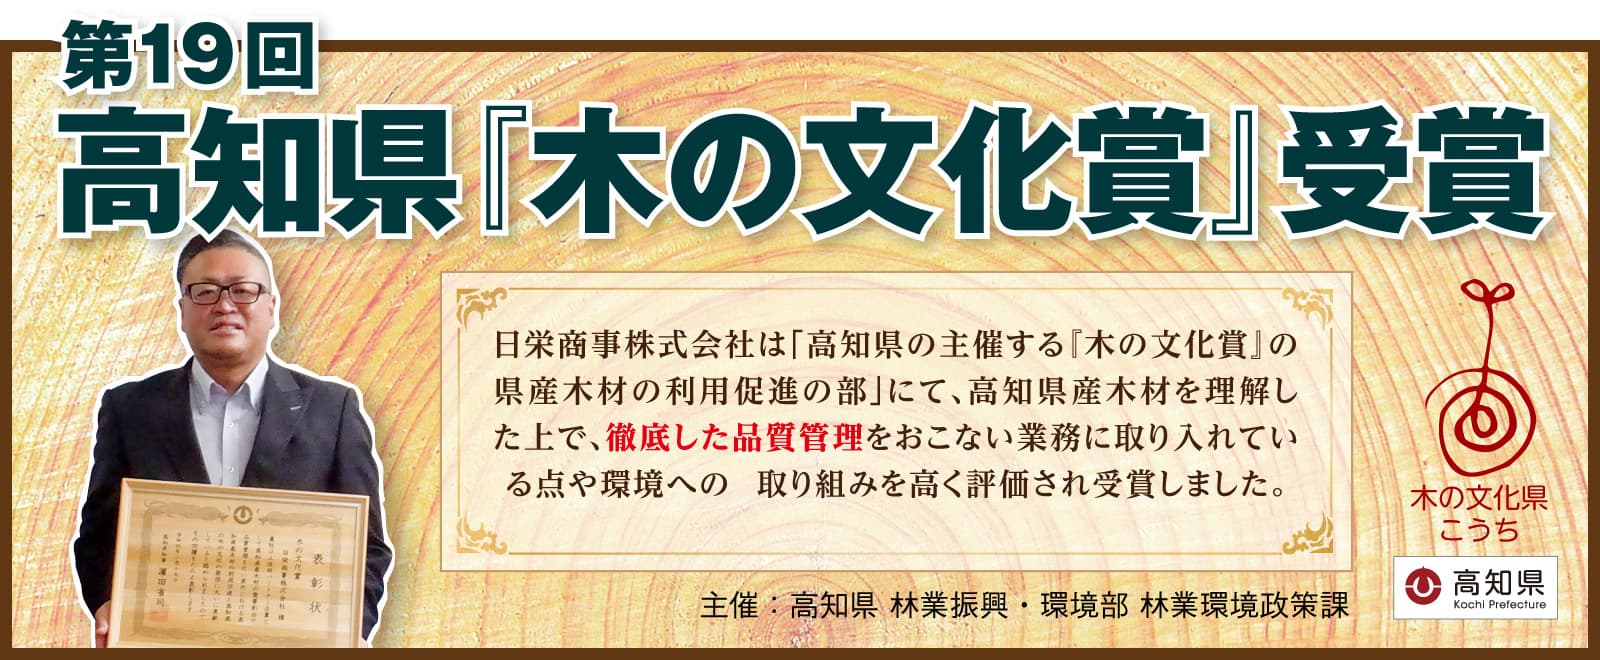 『高知県木の文化賞』受賞